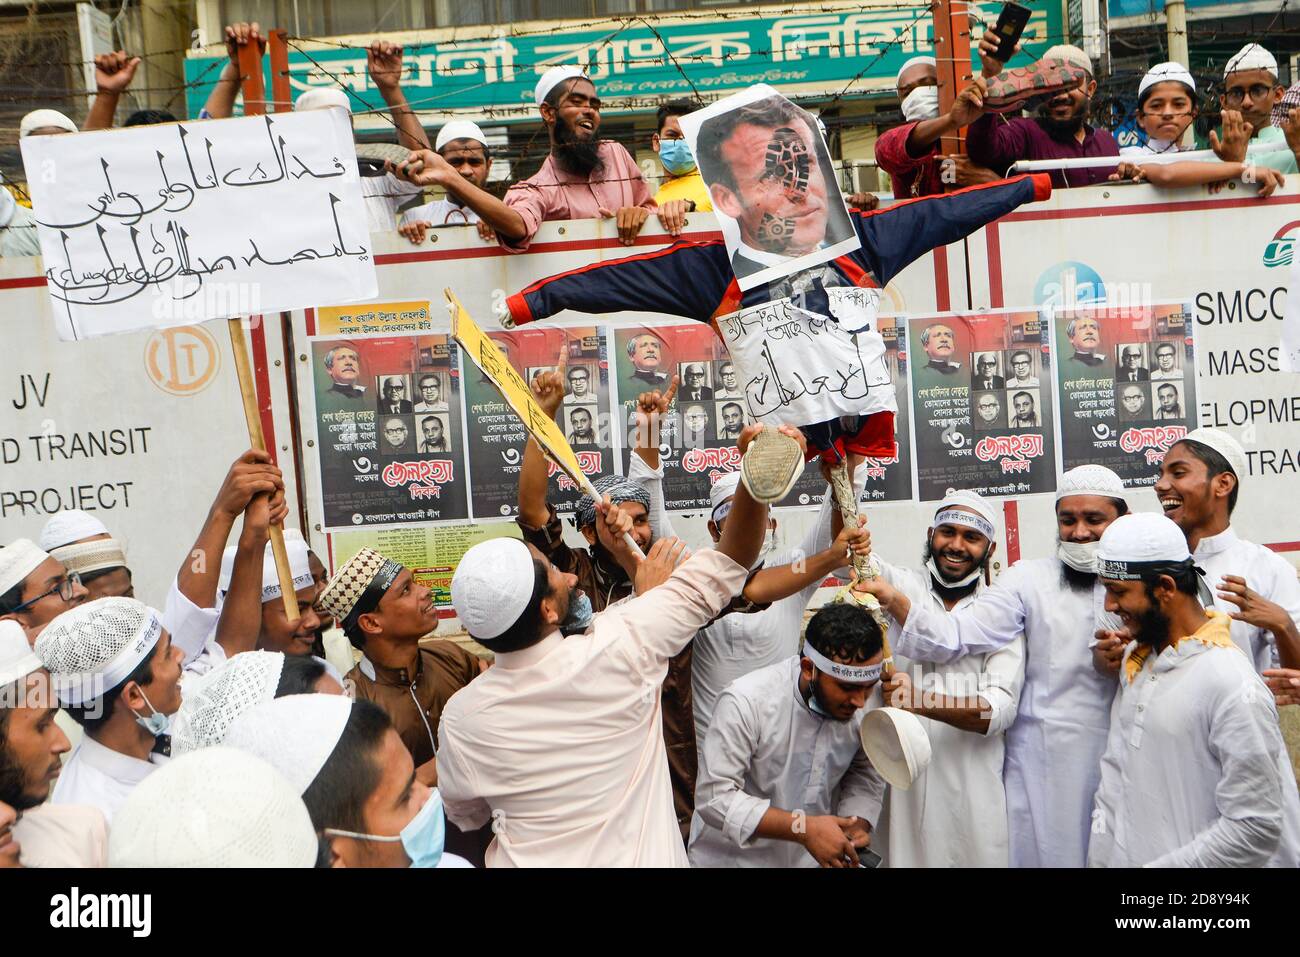 Während der Proteste in Dhaka werden Demonstranten einer islamistischen politischen Partei mit Schuhen auf ein Bildnis des französischen Präsidenten Emmanuel Macron gestampft.Muslime protestieren zum Boykott französischer Produkte und verurteilen Präsident Emmanuel Macron für seine Kommentare über die Karikaturen des Propheten Mohammed. Stockfoto